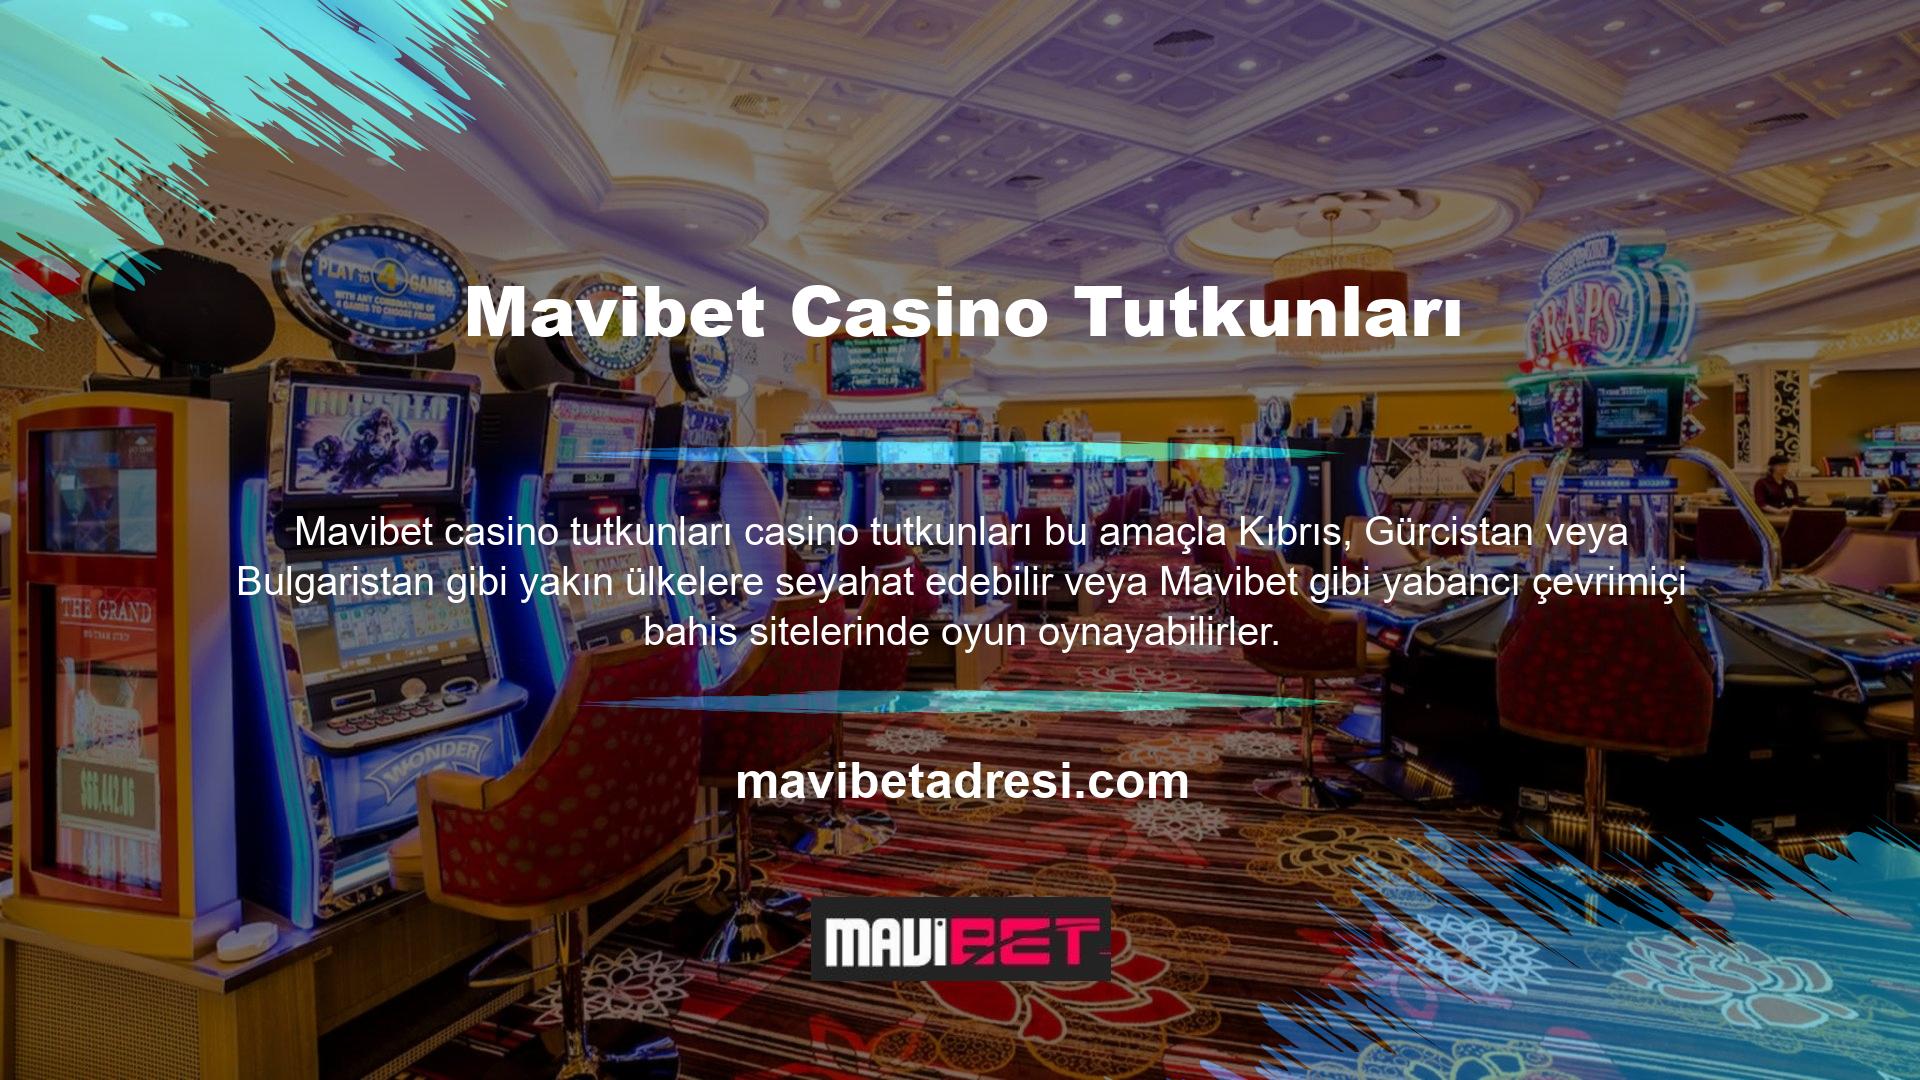 Herkesin sürekli yurtdışına seyahat etme imkânı olmadığından Mavibet gibi kaliteli casino ve canlı casino hizmetleri sunan platformlar casino tutkunları tarafından sıklıkla tercih edilmektedir